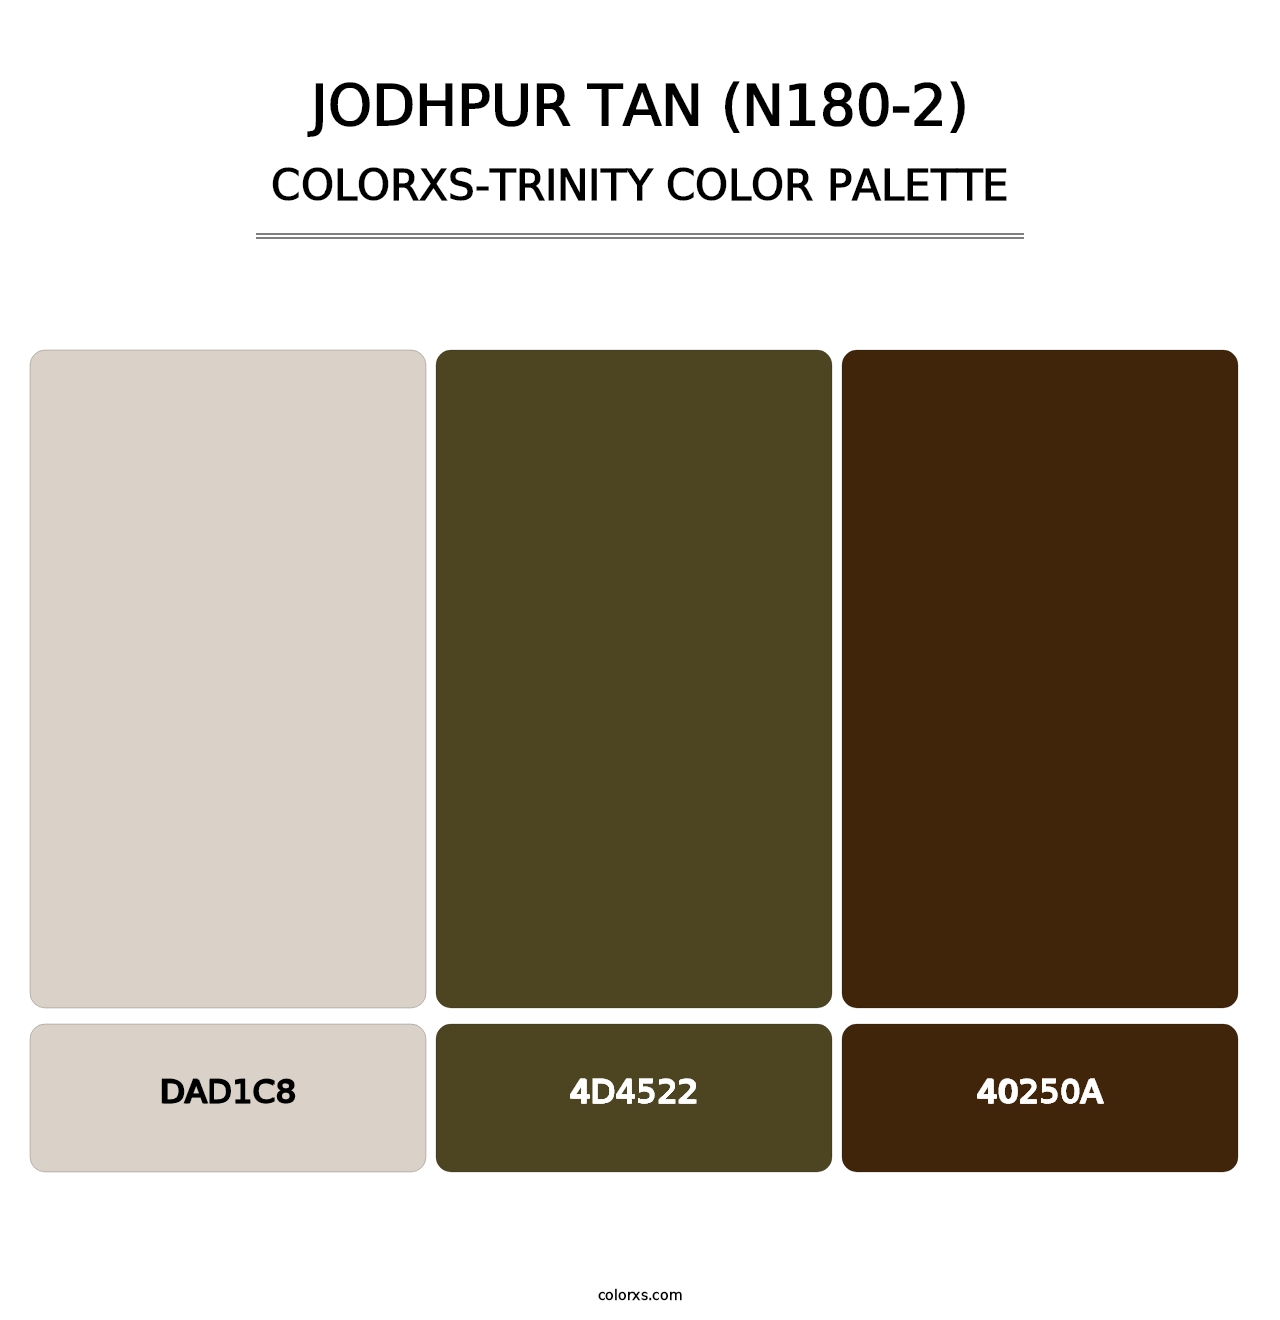 Jodhpur Tan (N180-2) - Colorxs Trinity Palette